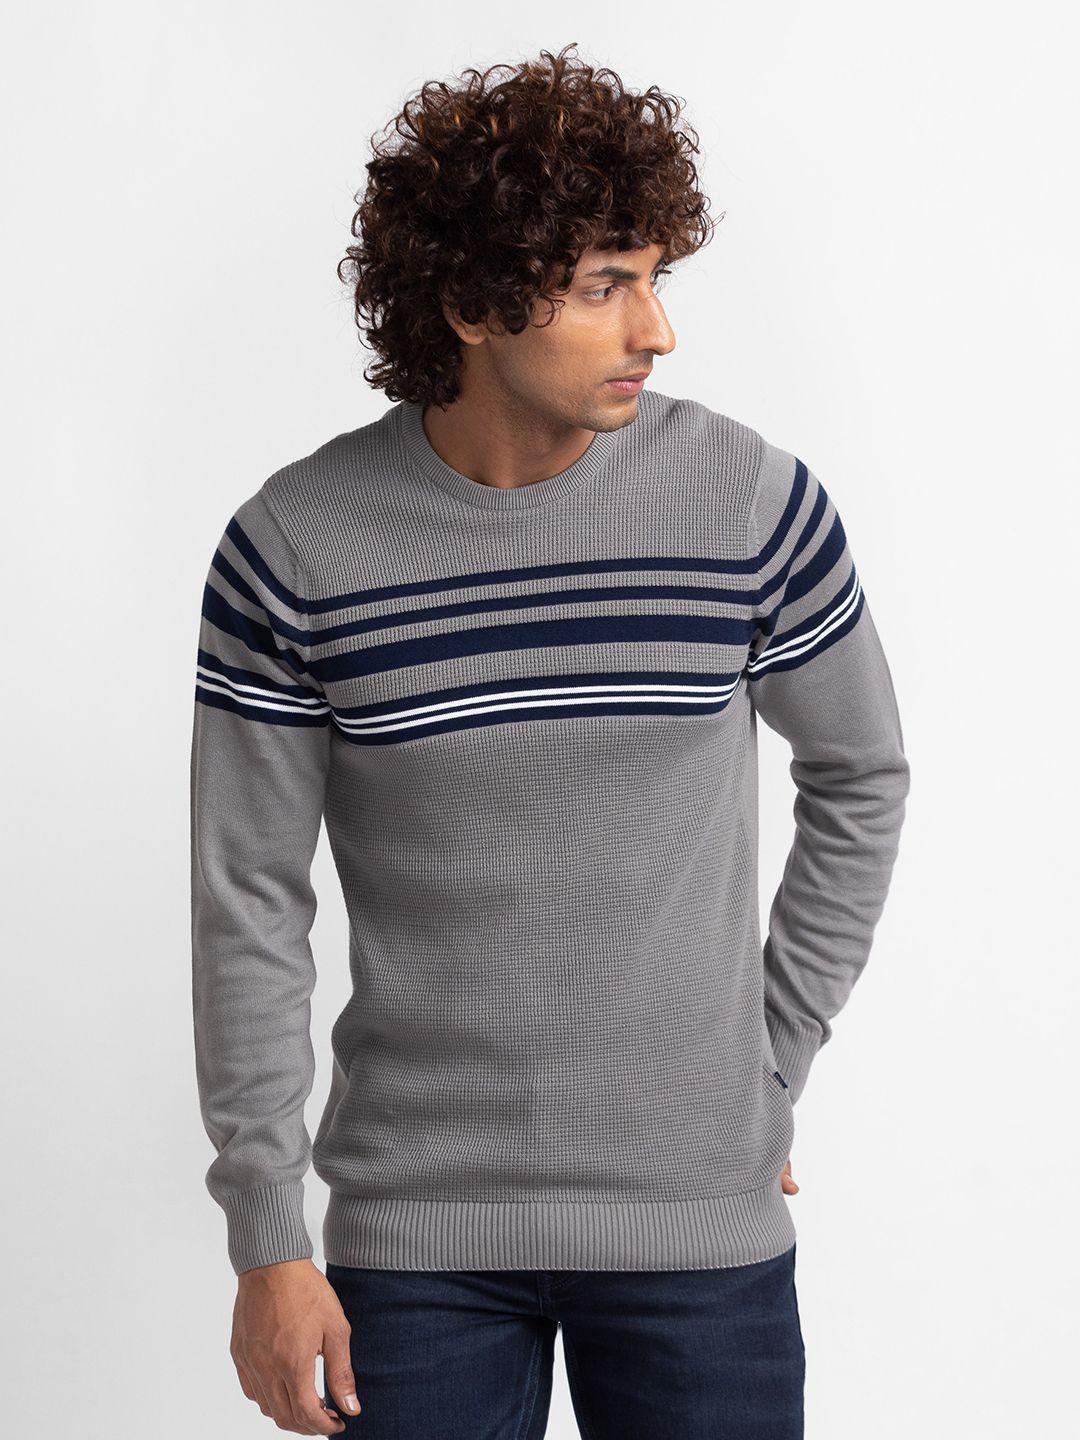 spykar-pure-cotton-striped-pullover-sweaters